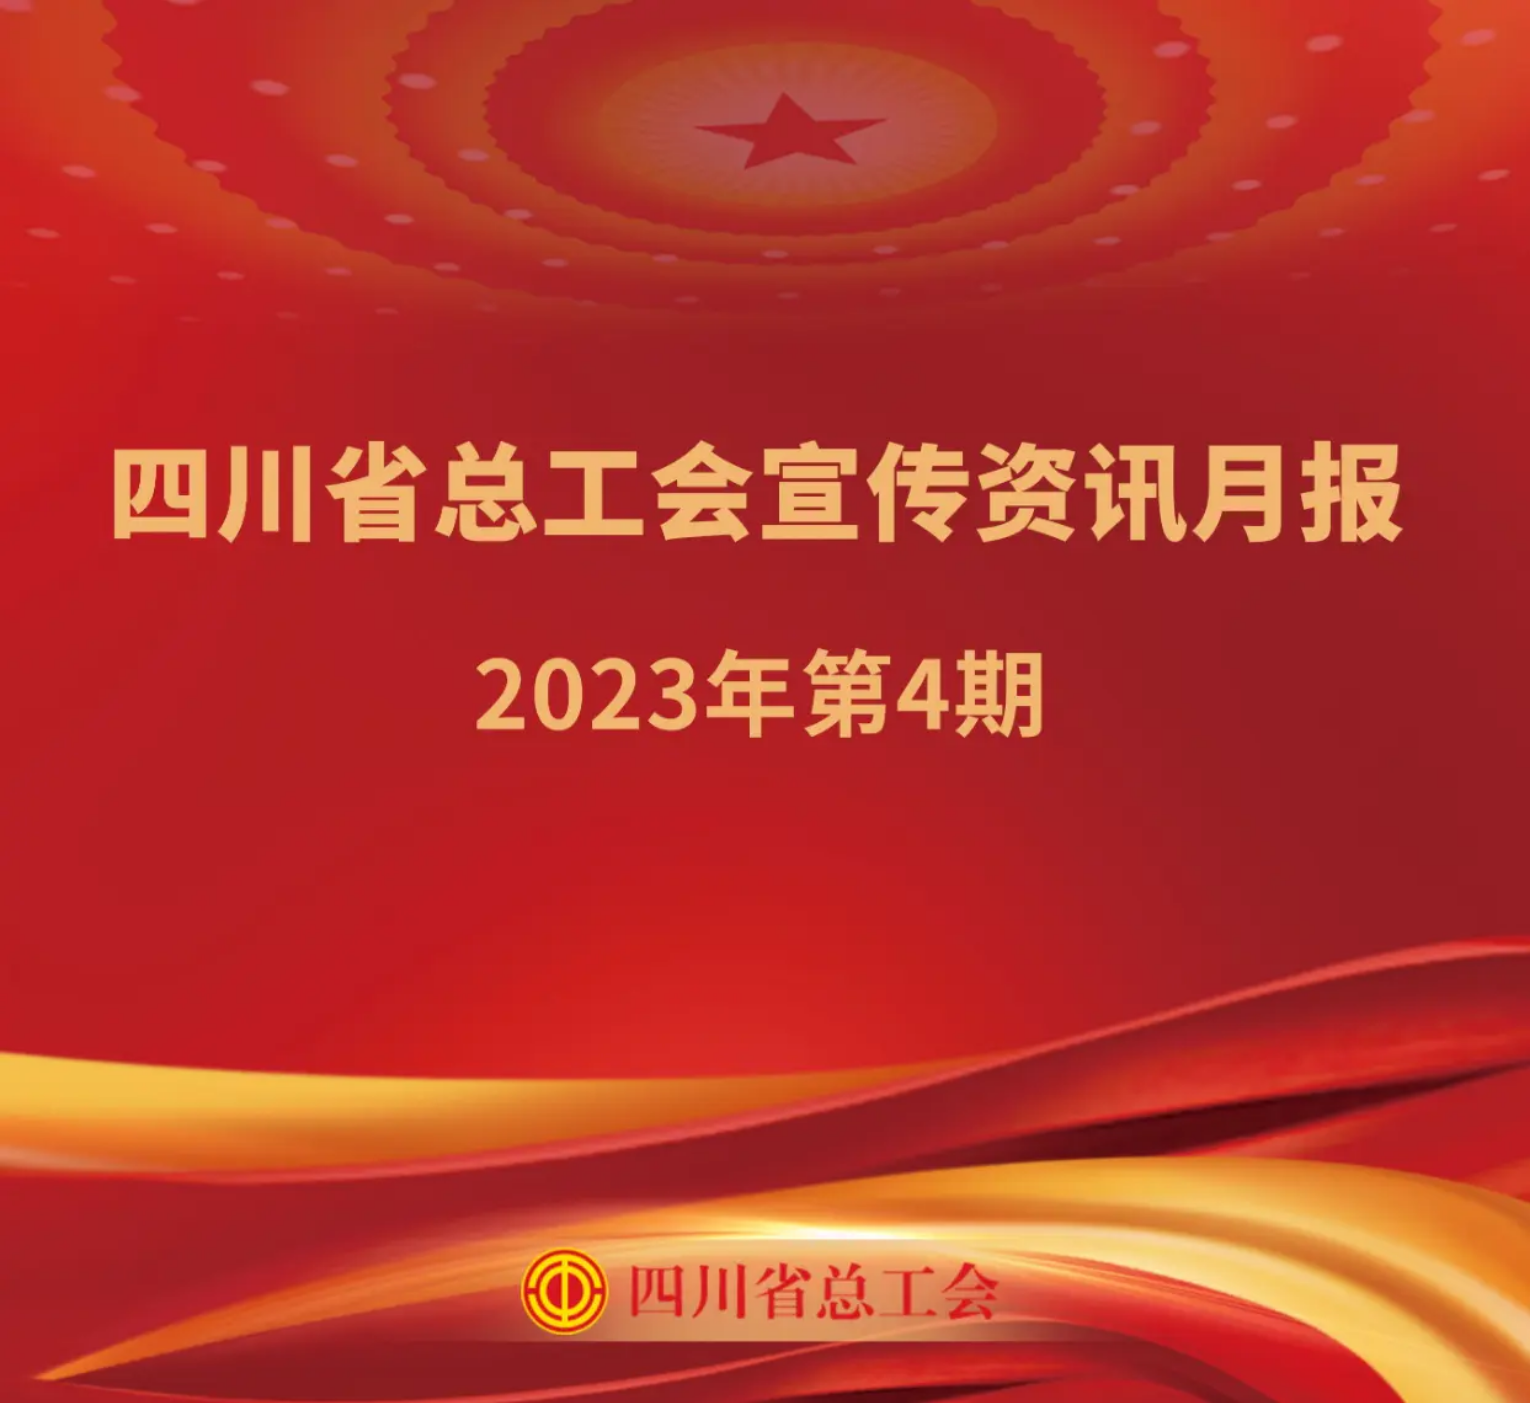 四川省总工会宣传资讯月报2023年第4期